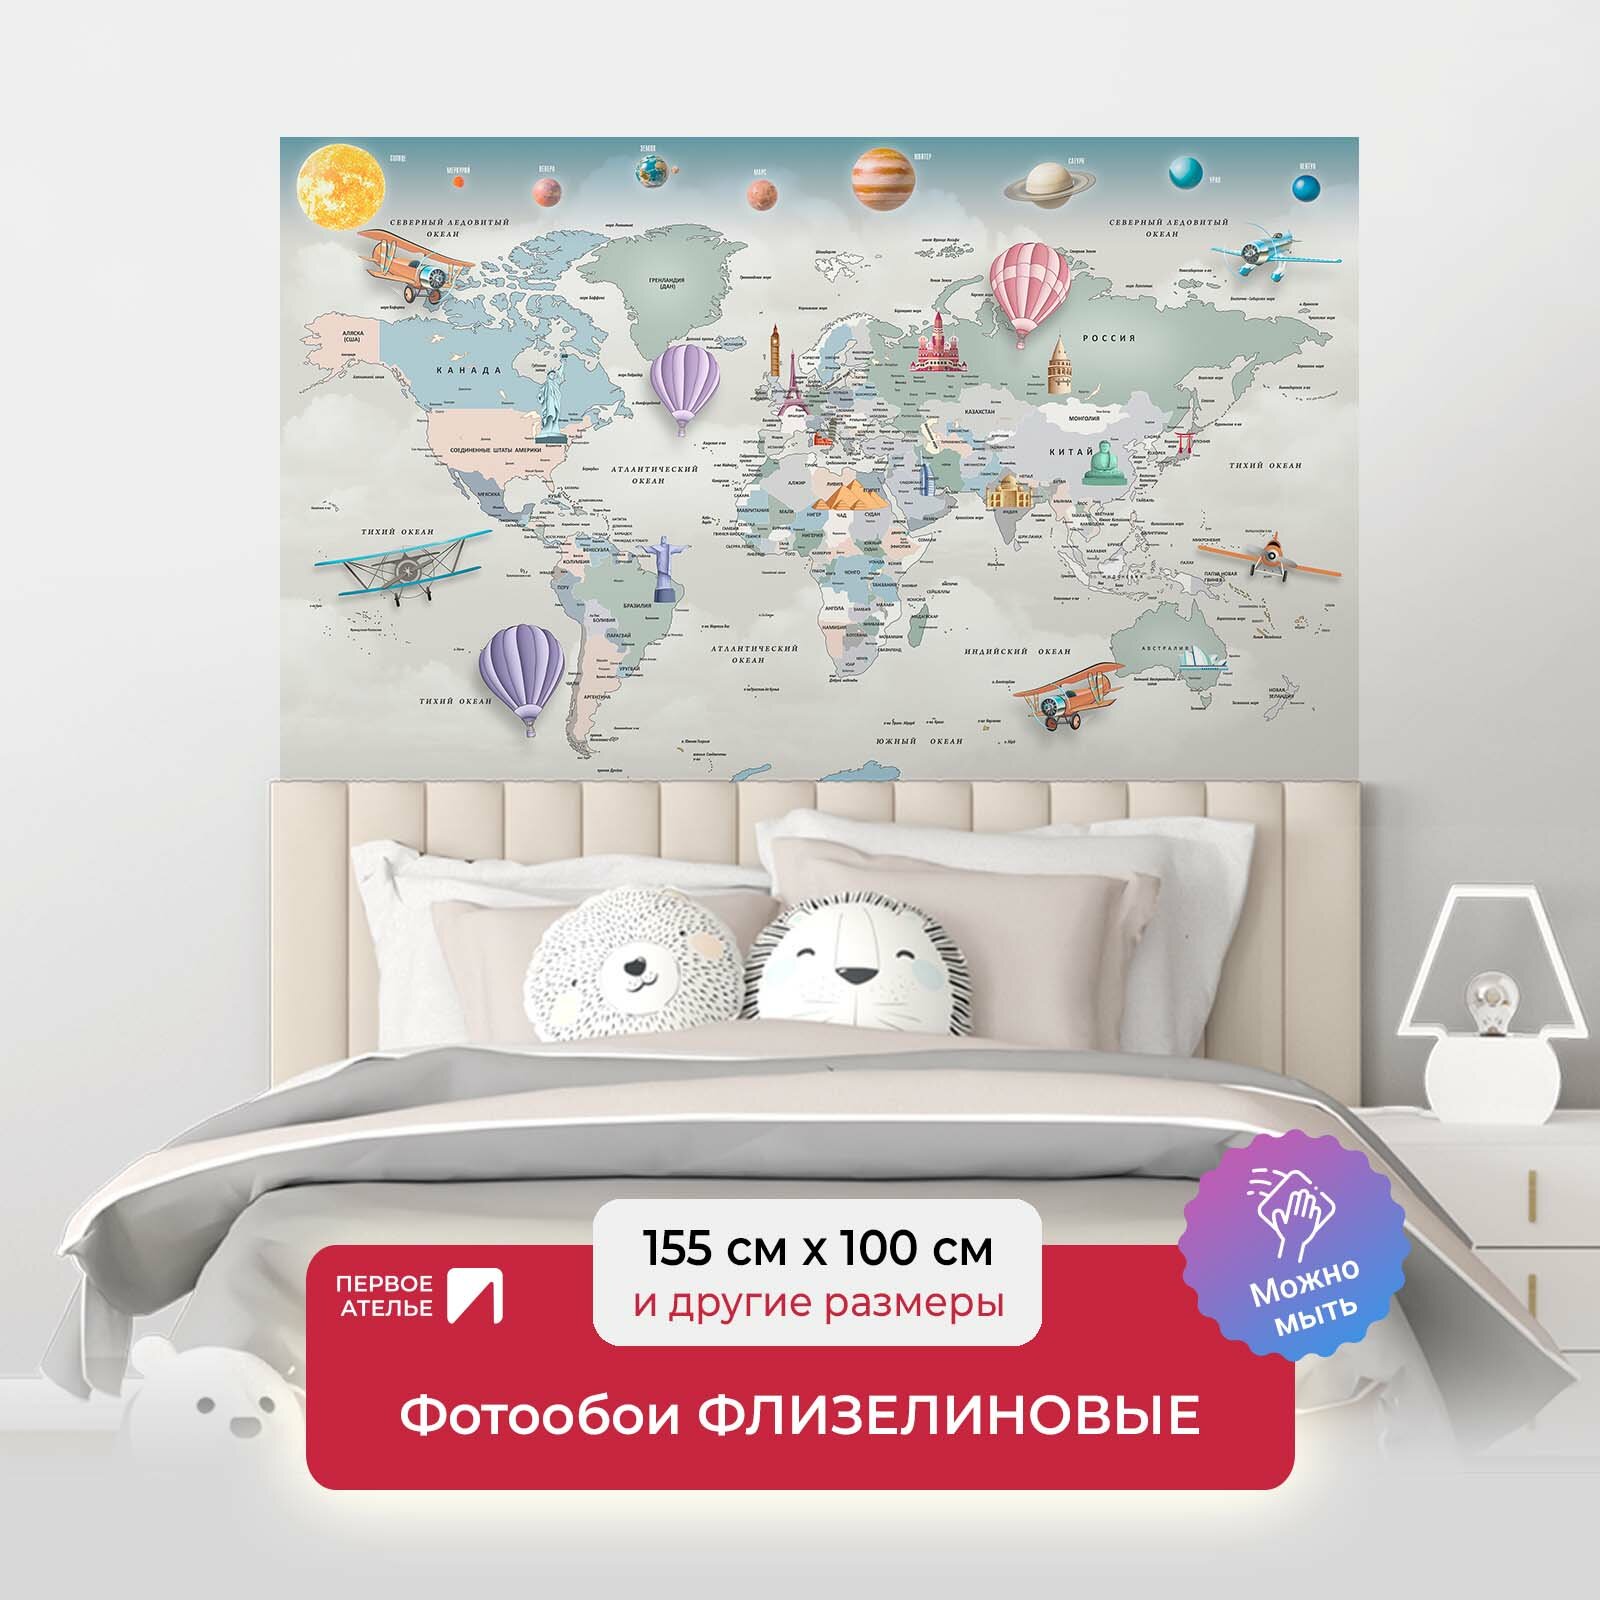 Фотообои на стену для мальчиков и девочек первое ателье "Карта мира с достопримечательностям и планетами" 155х100 см (ШхВ), флизелиновые Premium